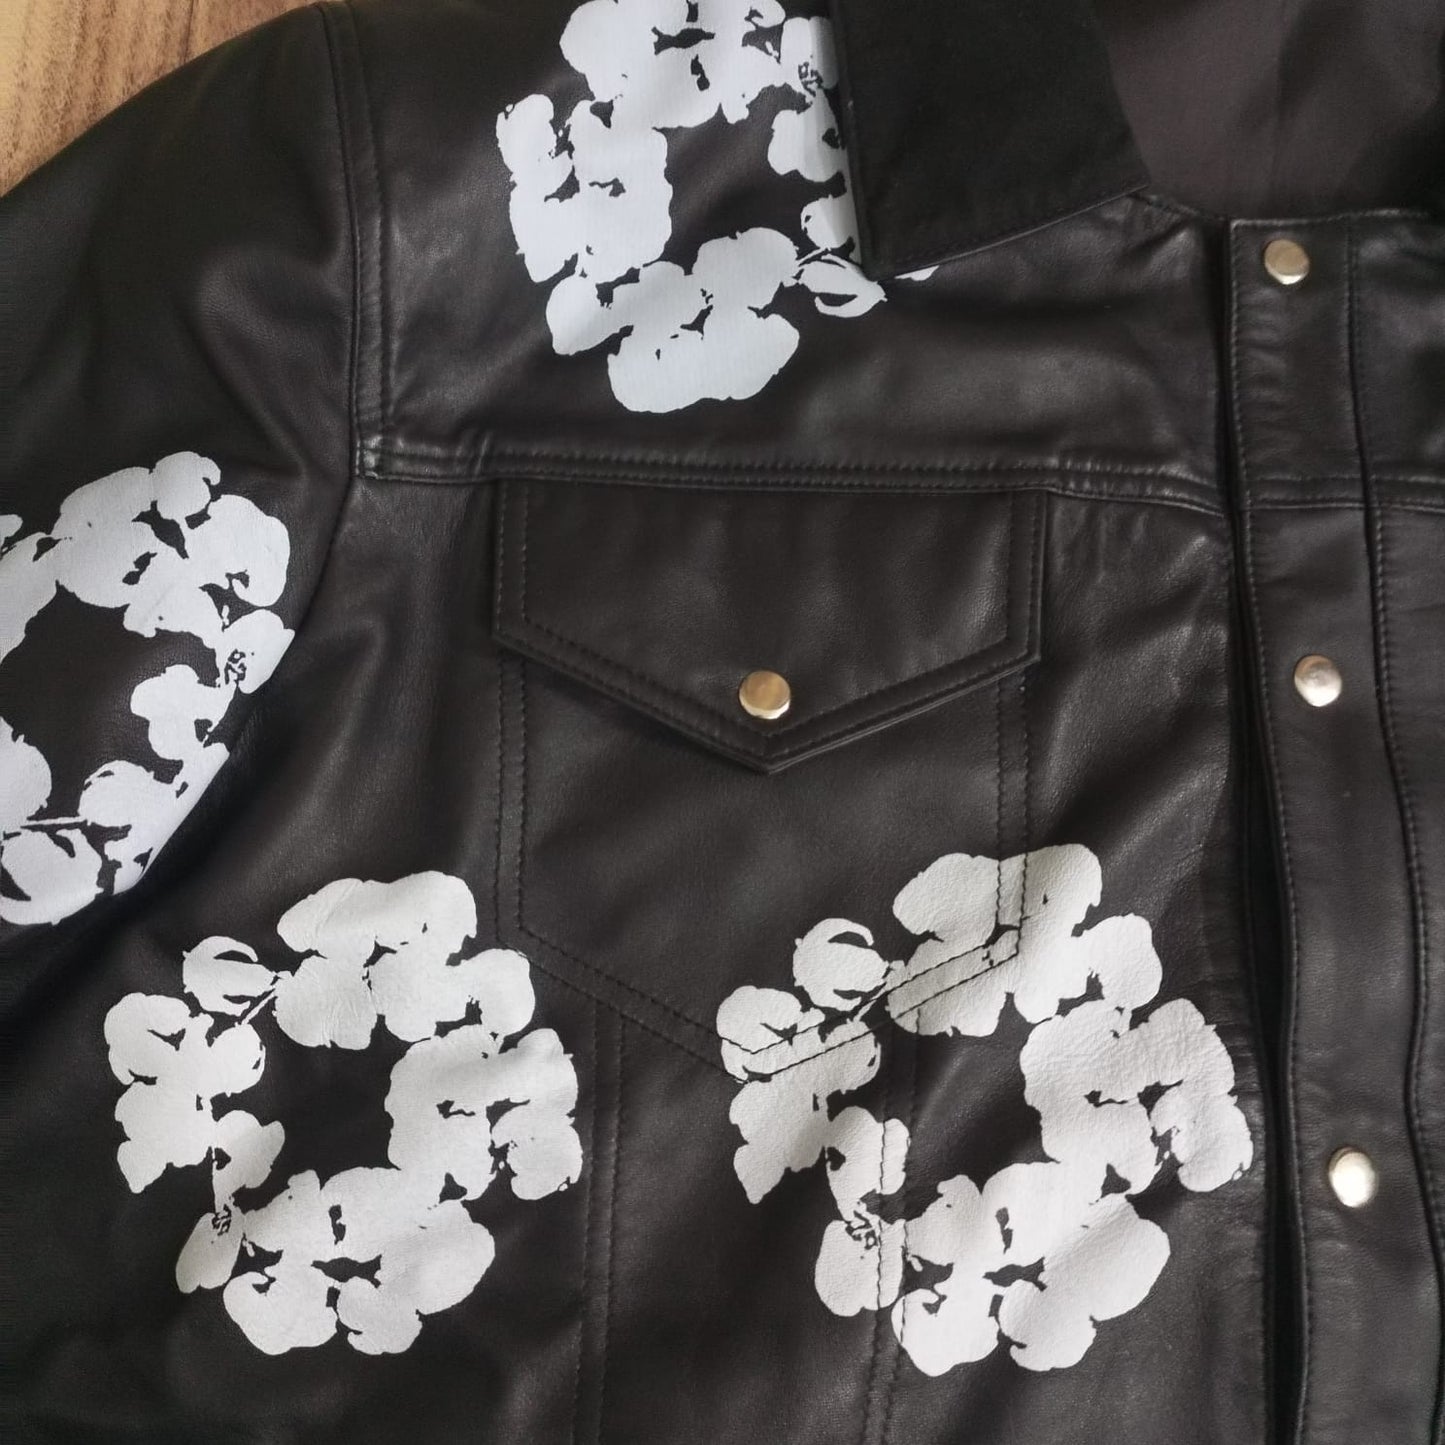 denim tear leather jacket for men black leather jacket denim tears genuine leather jacket men unique leather jacket men